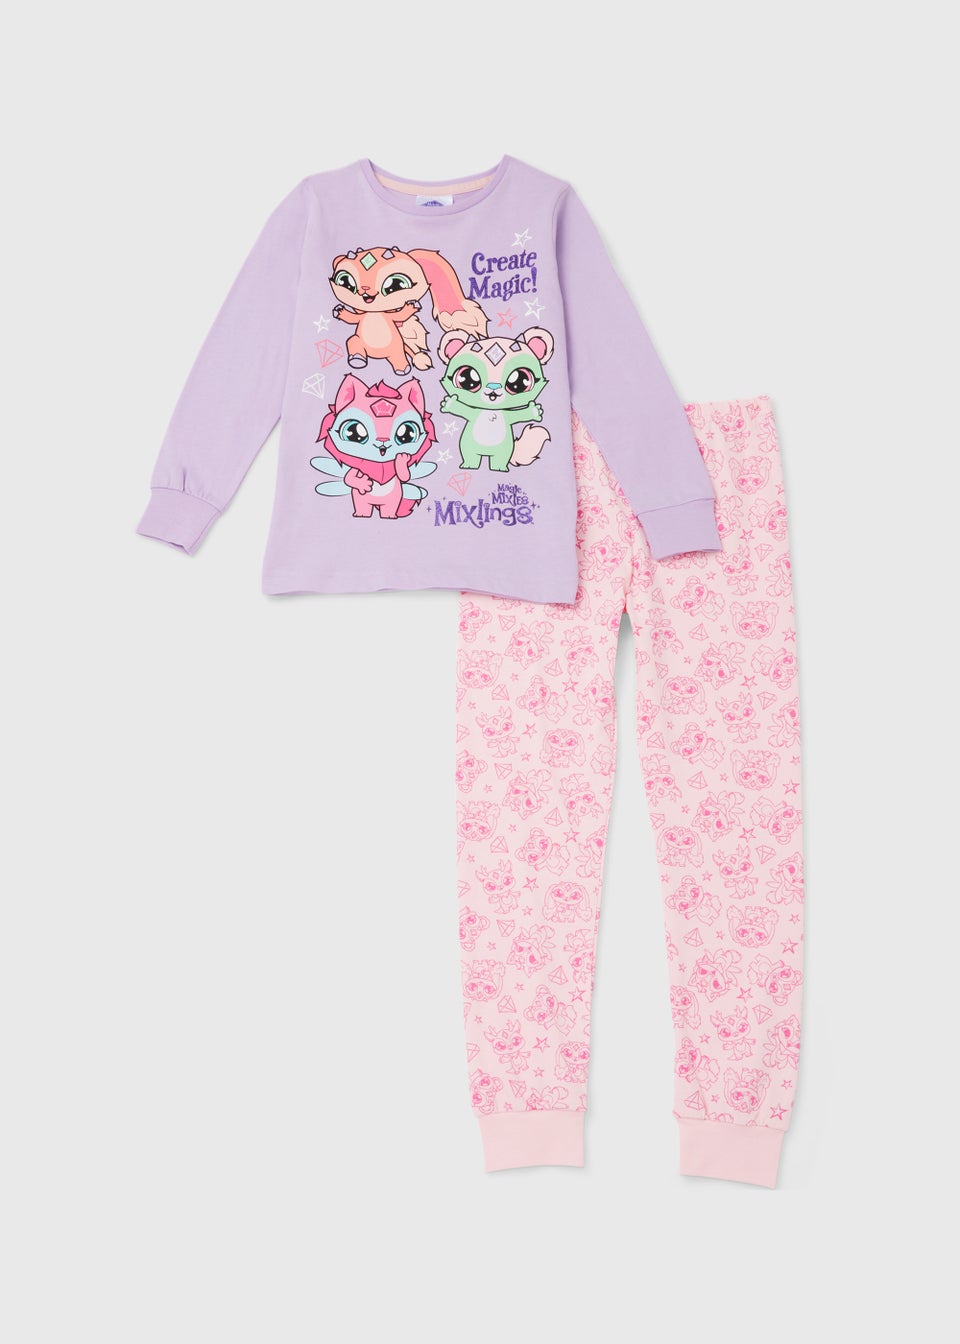 Детский пижамный комплект Magic Mixies фиолетового и розового цвета (3–8 лет)